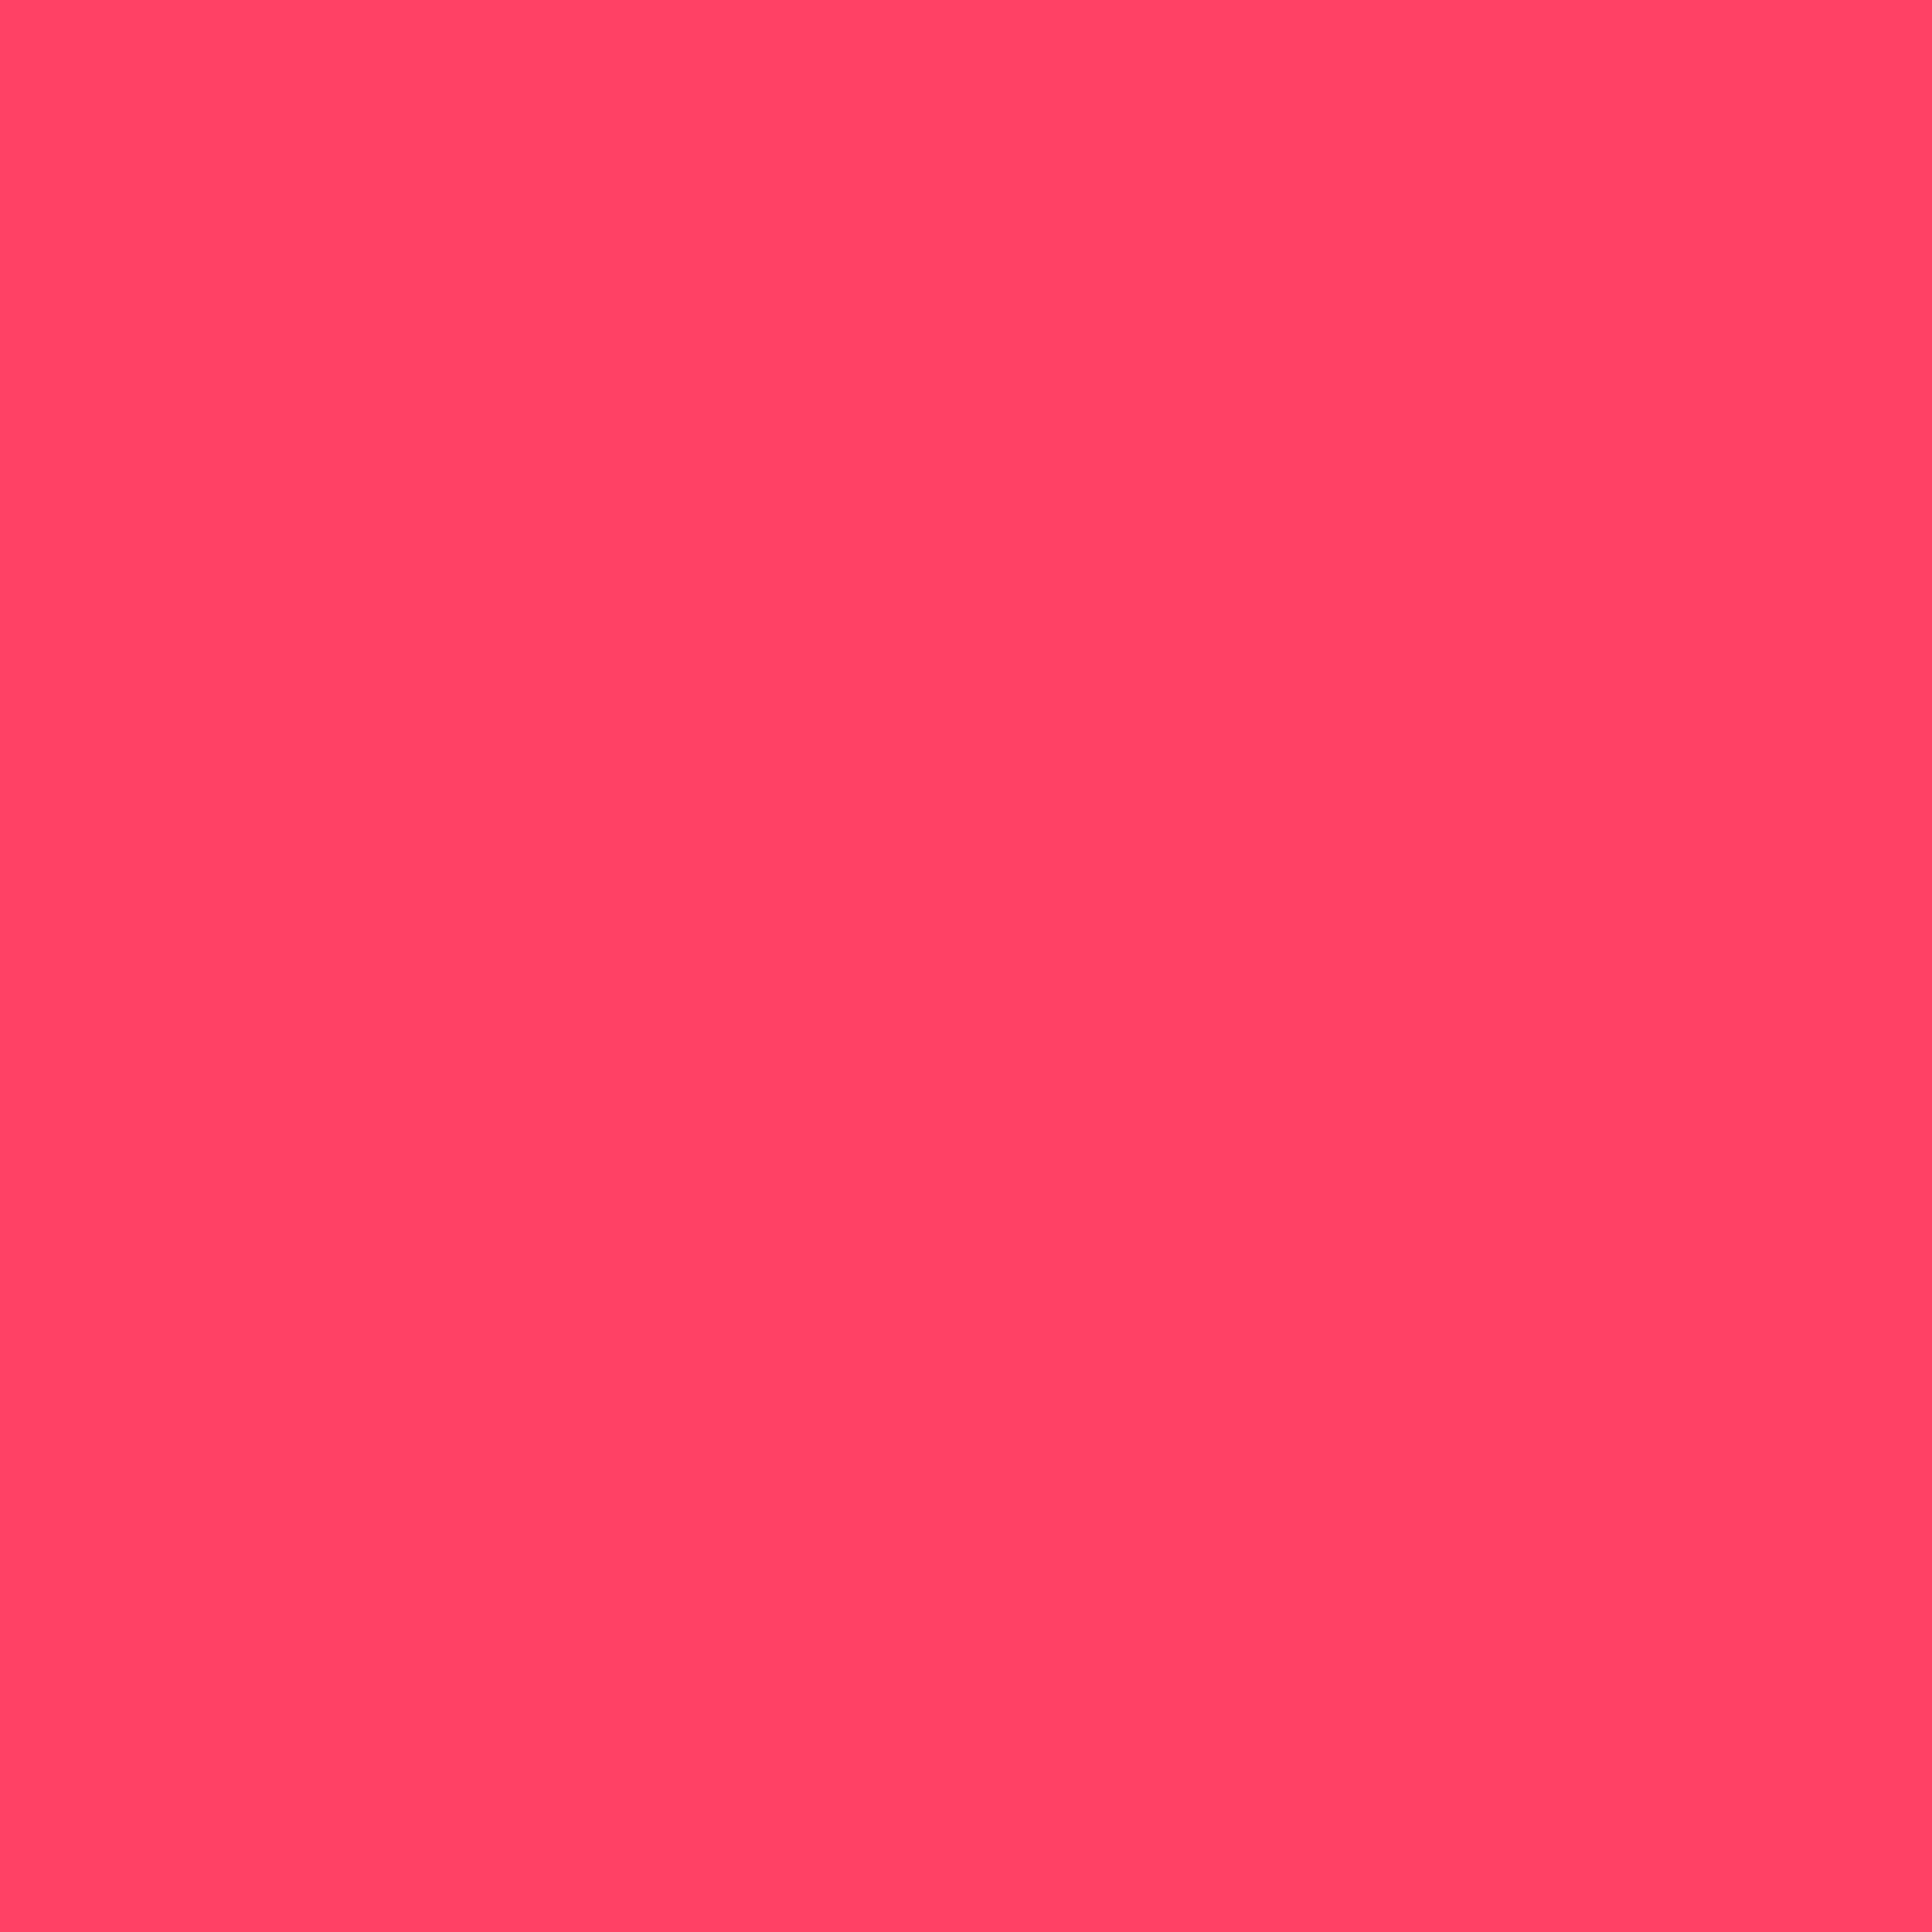 2732x2732 Neon Fuchsia Solid Color Background